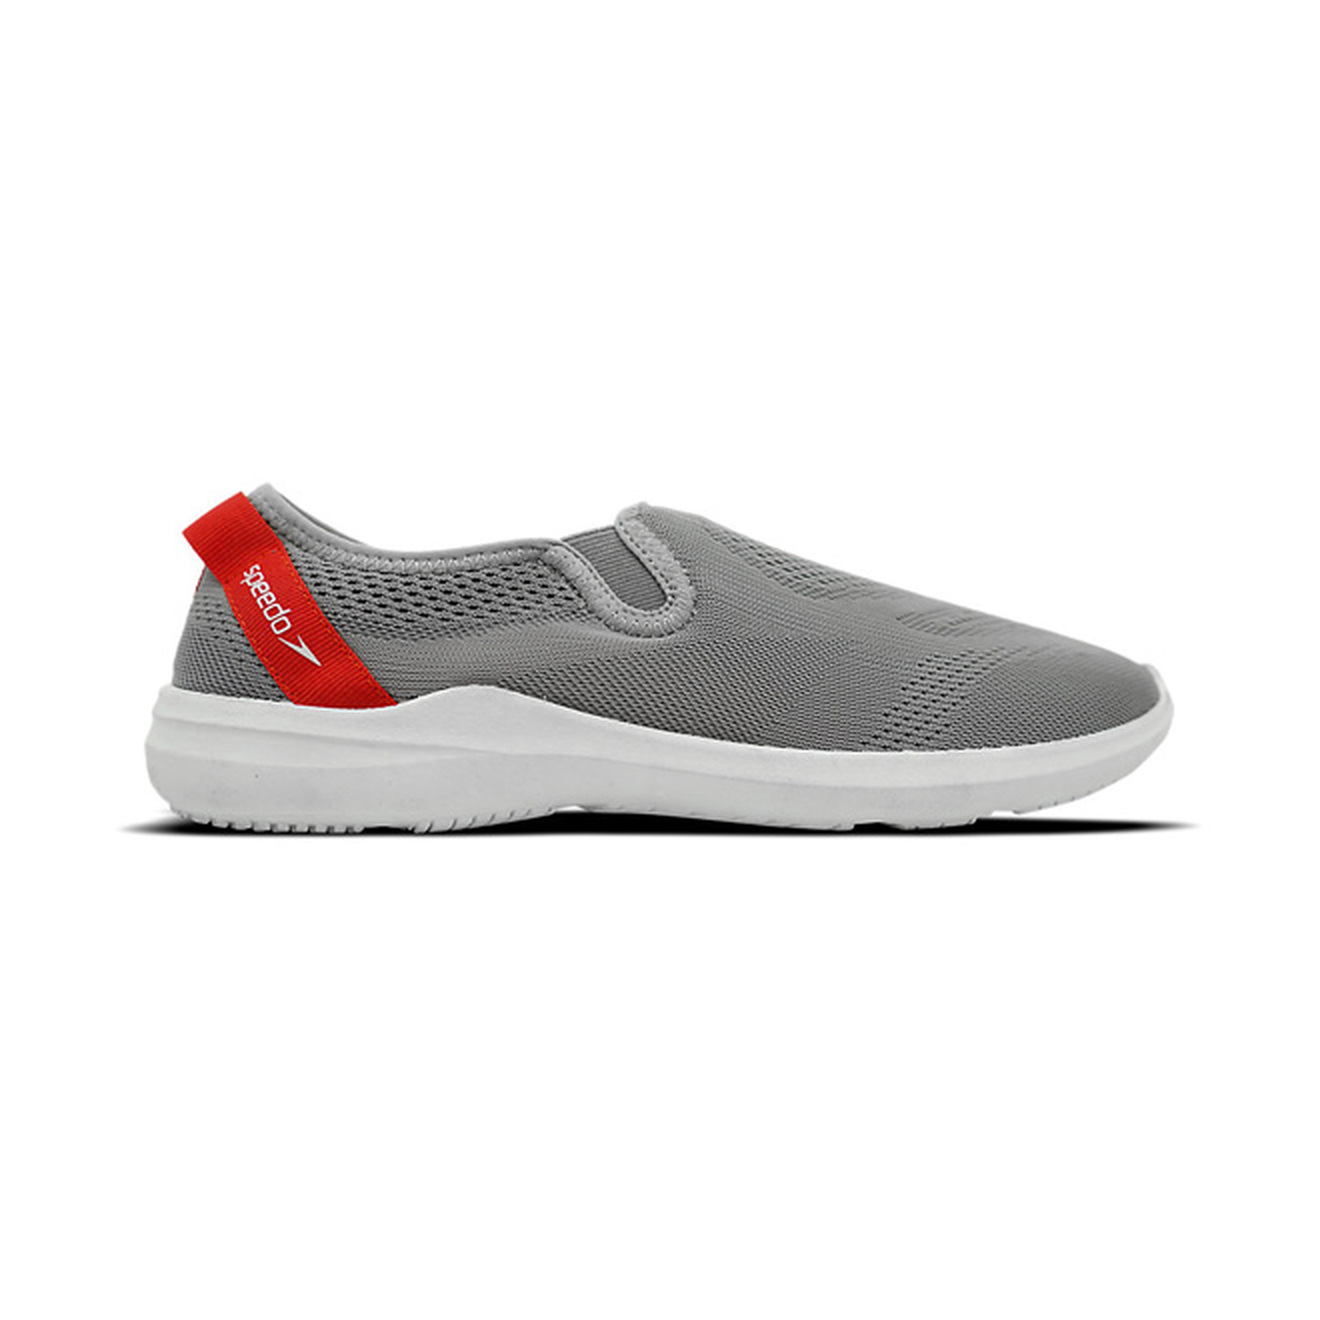 Speedo Men's Water Shoes SURFWALKER Pro Mesh Grey Size 9